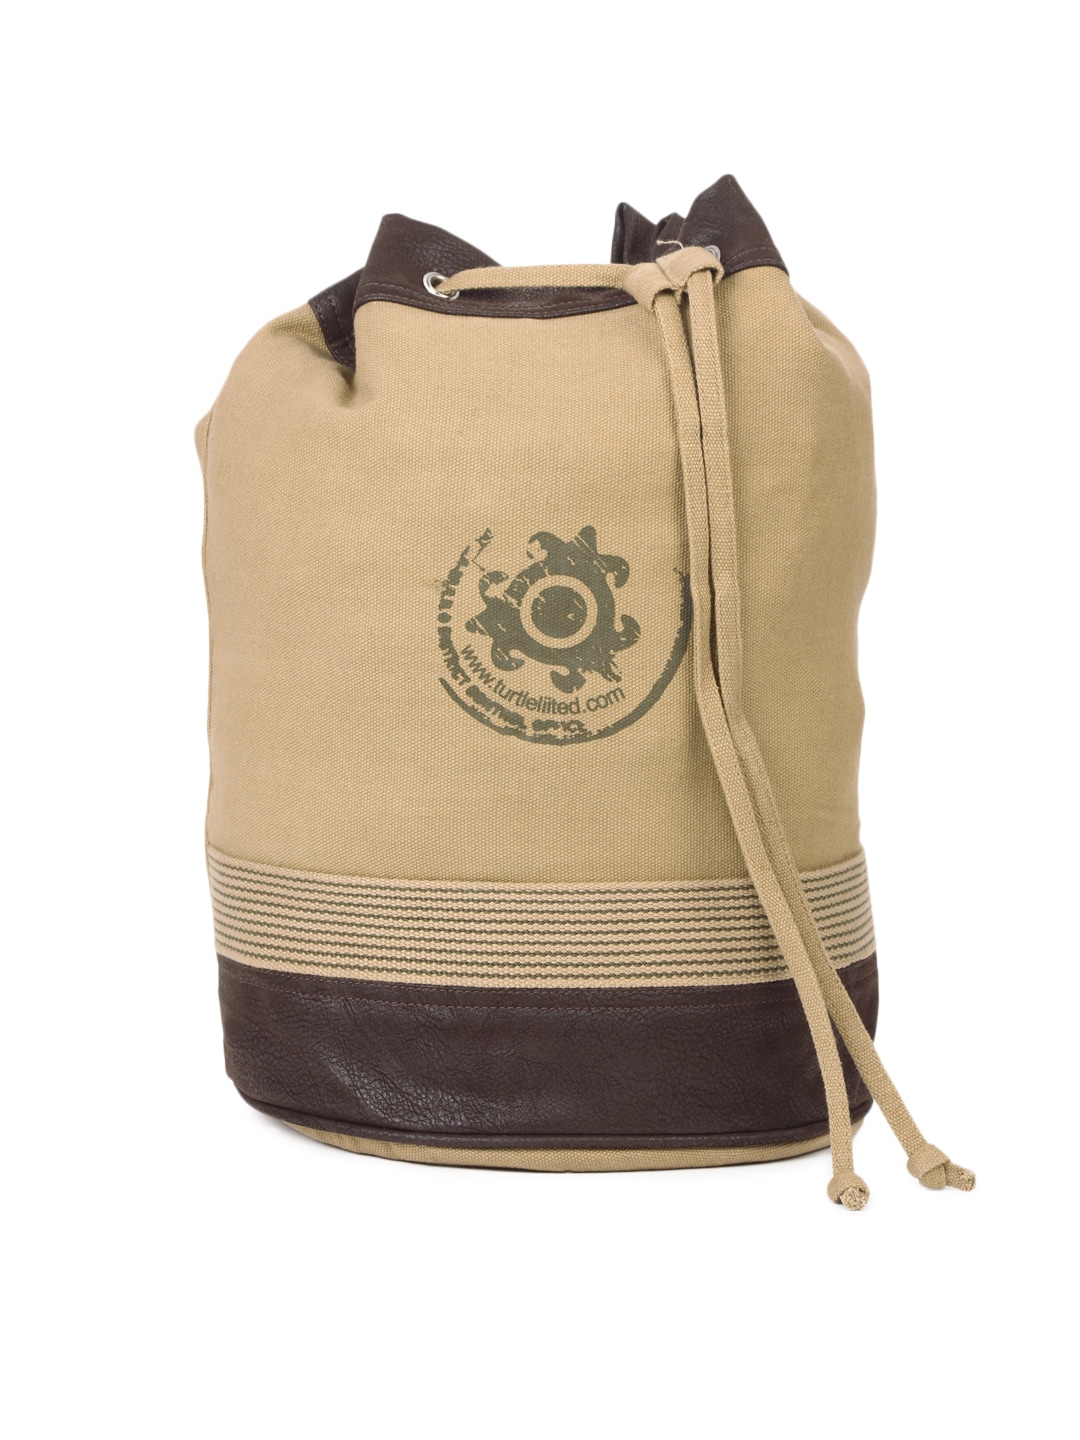 Turtle Unisex Khaki Duffle Bag